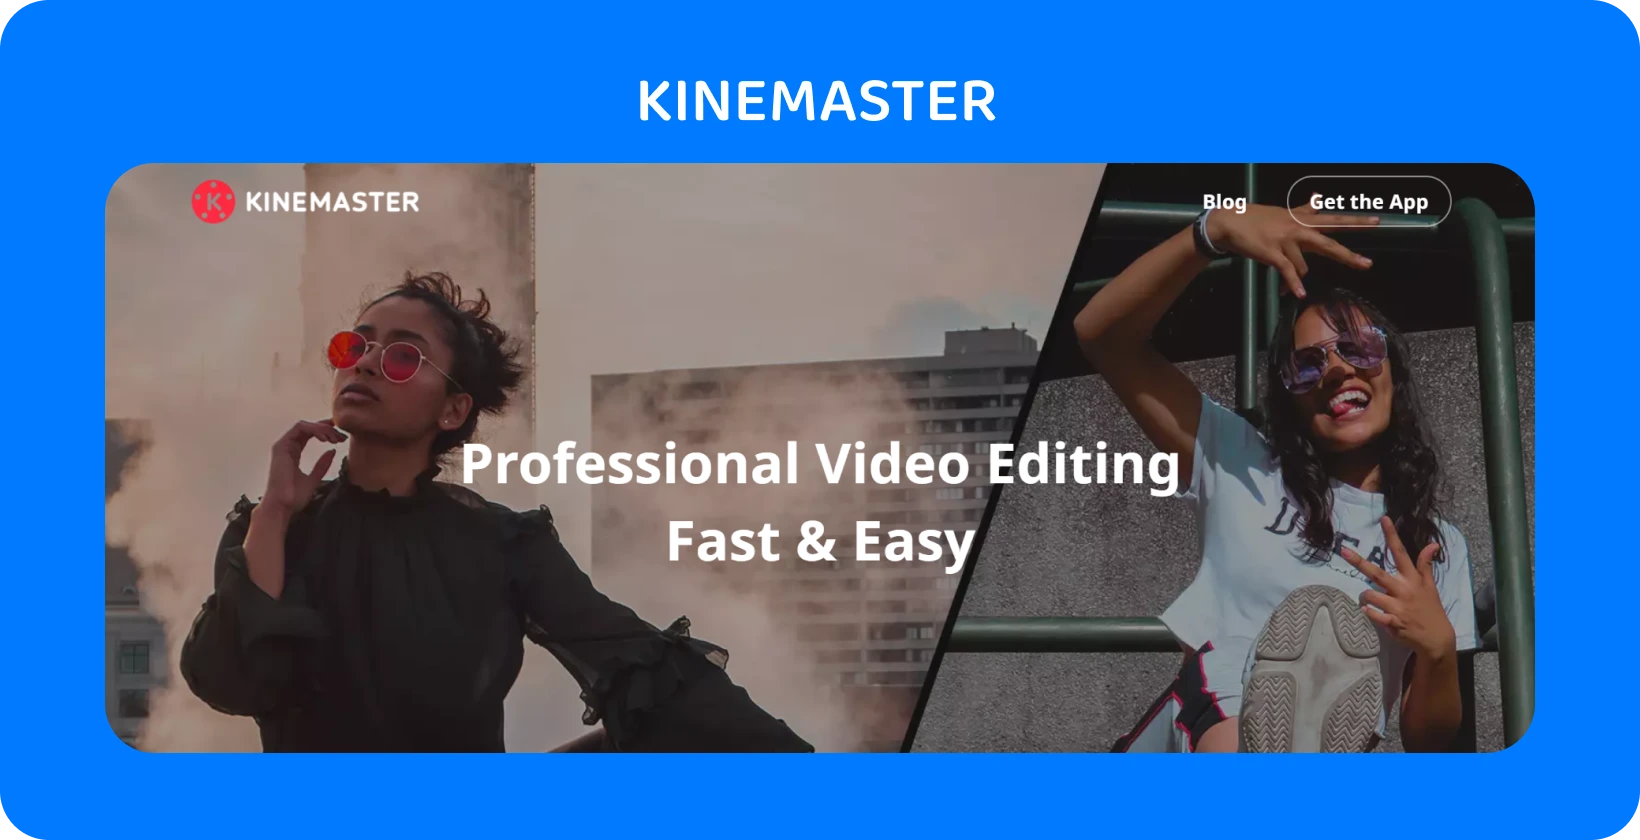 KineMaster rakenduse reklaami, kus poseerivad kaks mudelit, tõstes esile professionaalset videotöötlust, mis on kiire ja lihtne.